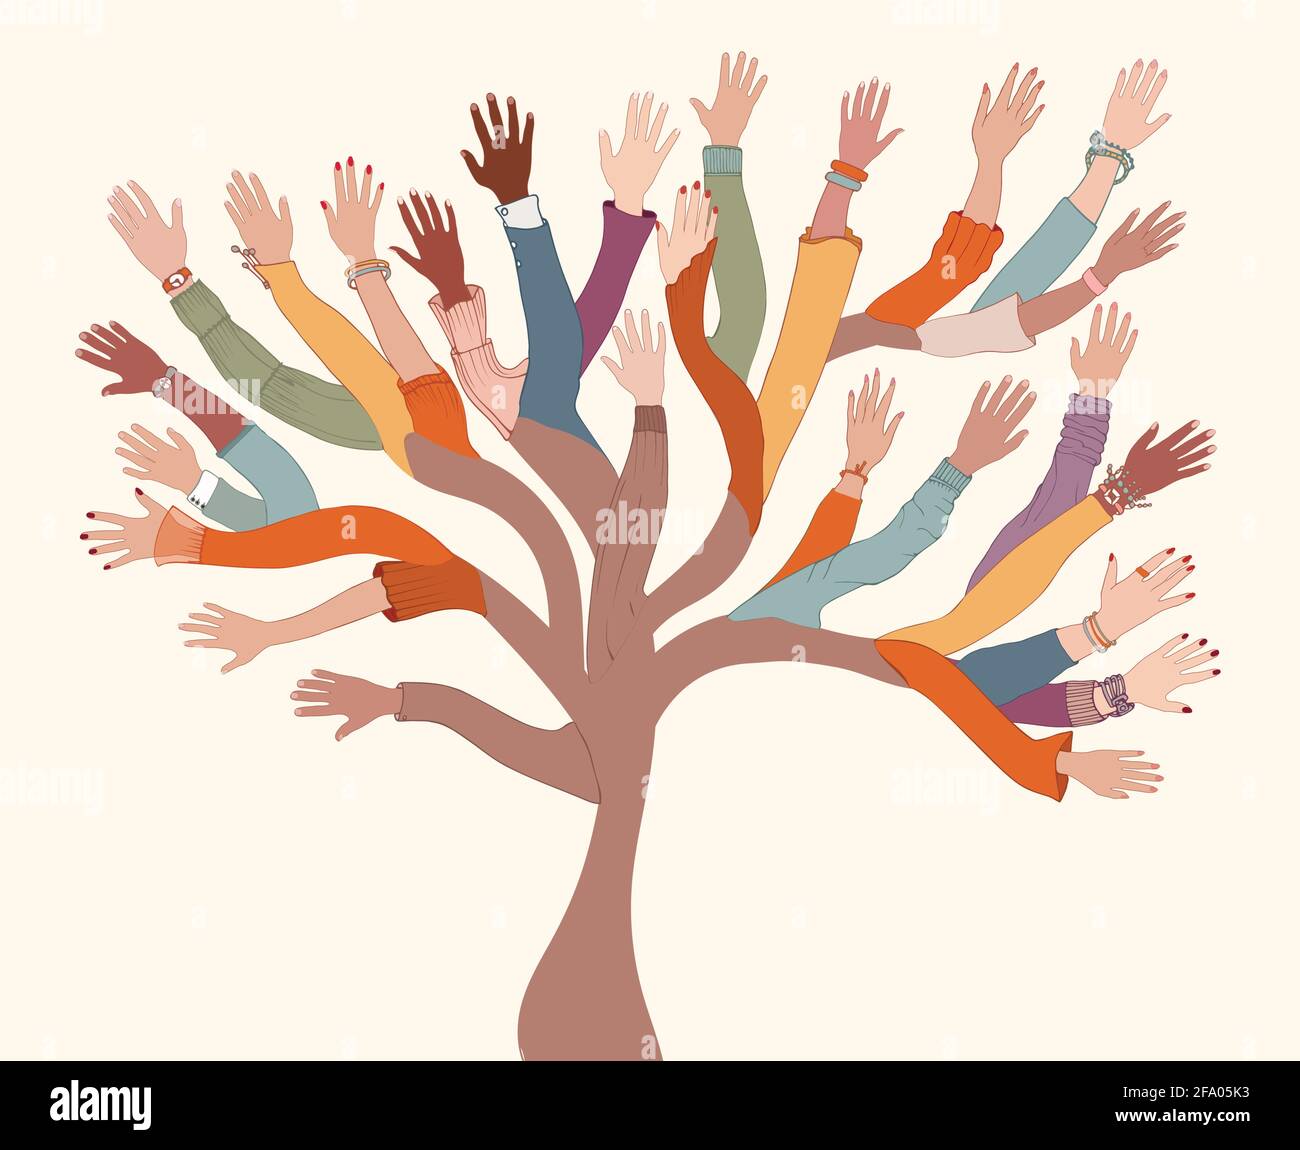 Groupe de mains de personnes diverses et multiethniques.arbre avec des branches Fait de mains humaines et arms.Community concept - égalité raciale - coopération - Illustration de Vecteur